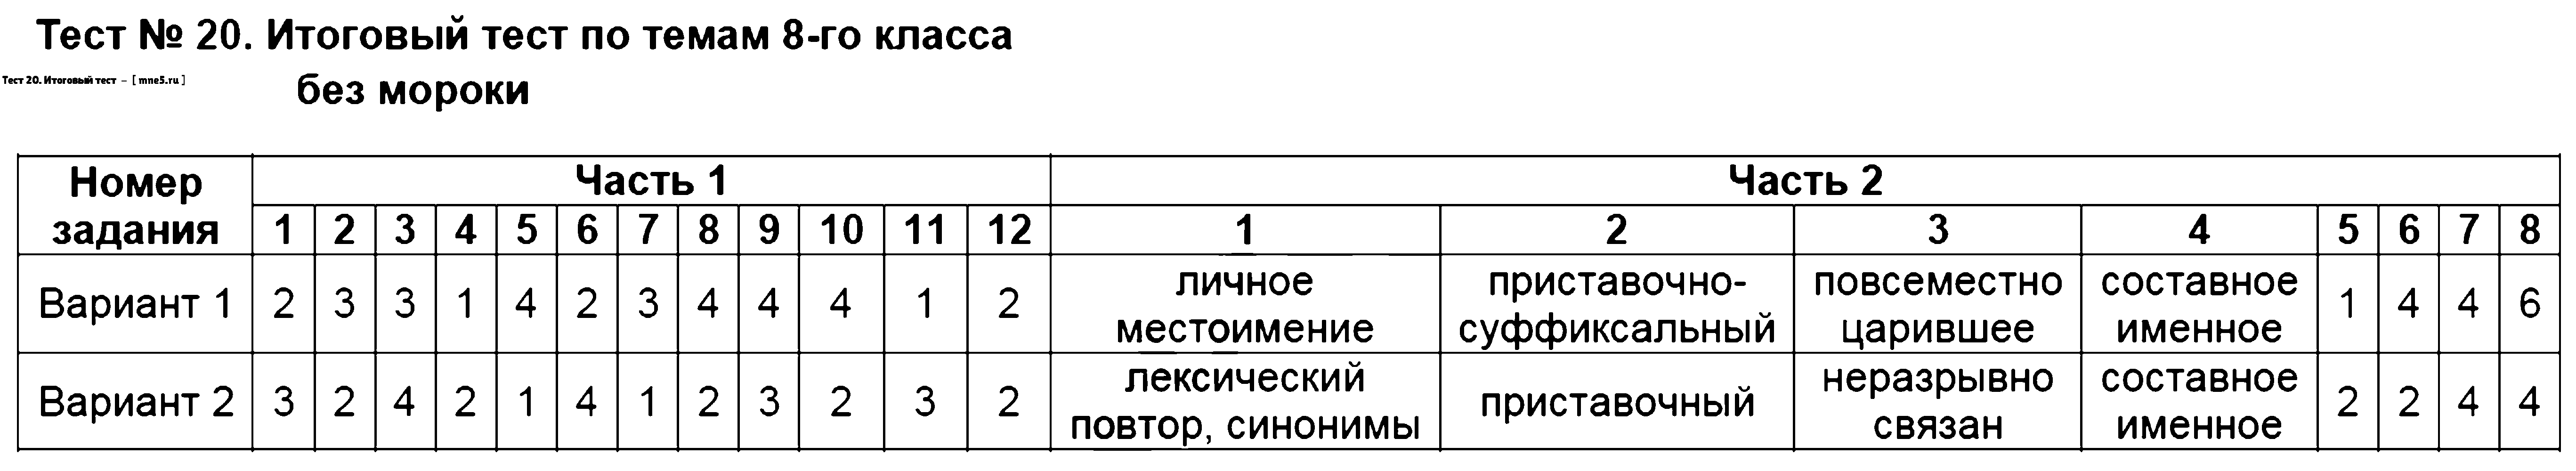 ГДЗ Русский язык 8 класс - Тест 20. Итоговый тест